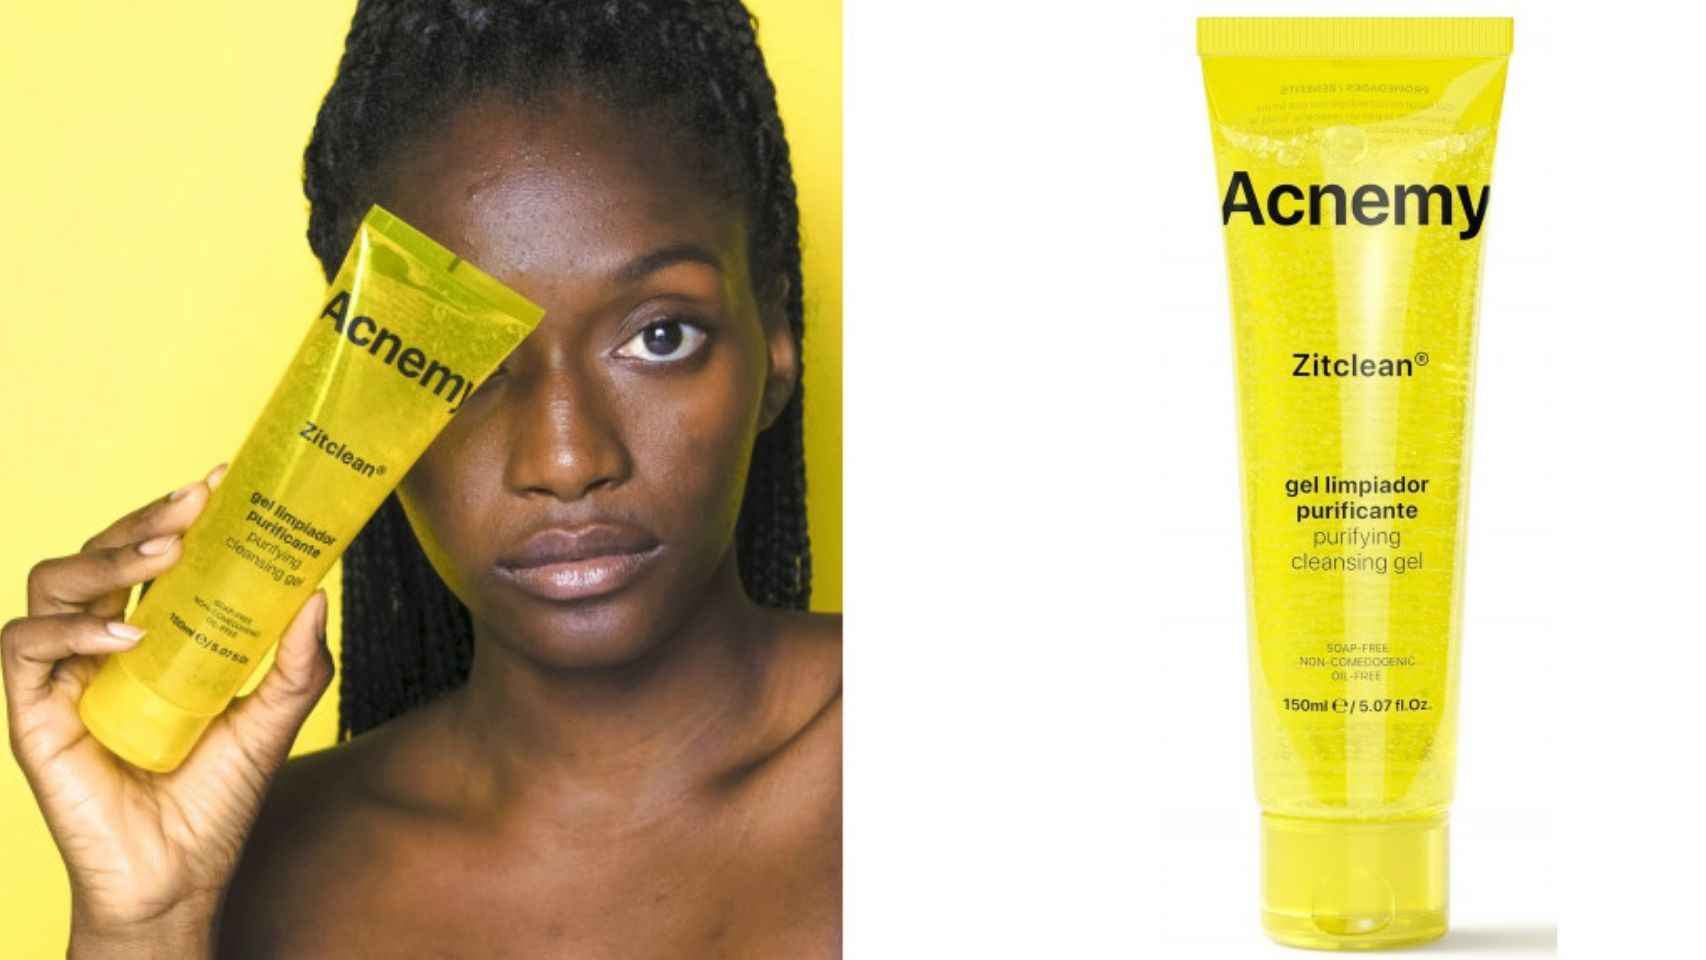 El gel limpiador purificante de Acnemy Zitclean reduce y frena el acné adulto.